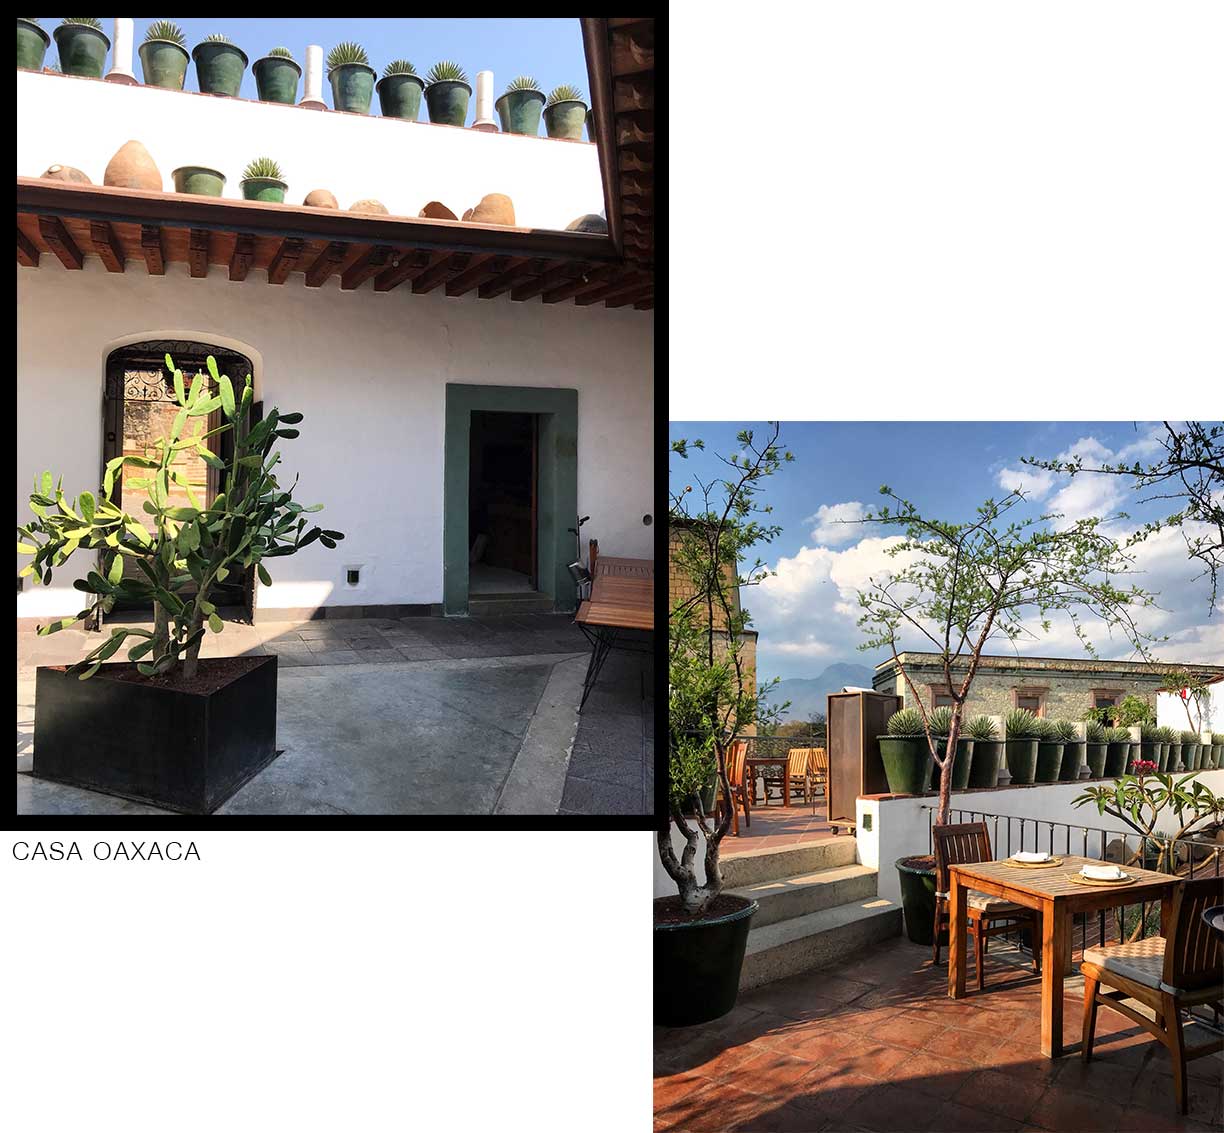 casa oaxaca restaurant, best outdoor patio brunch spot in oaxaca, mexico.